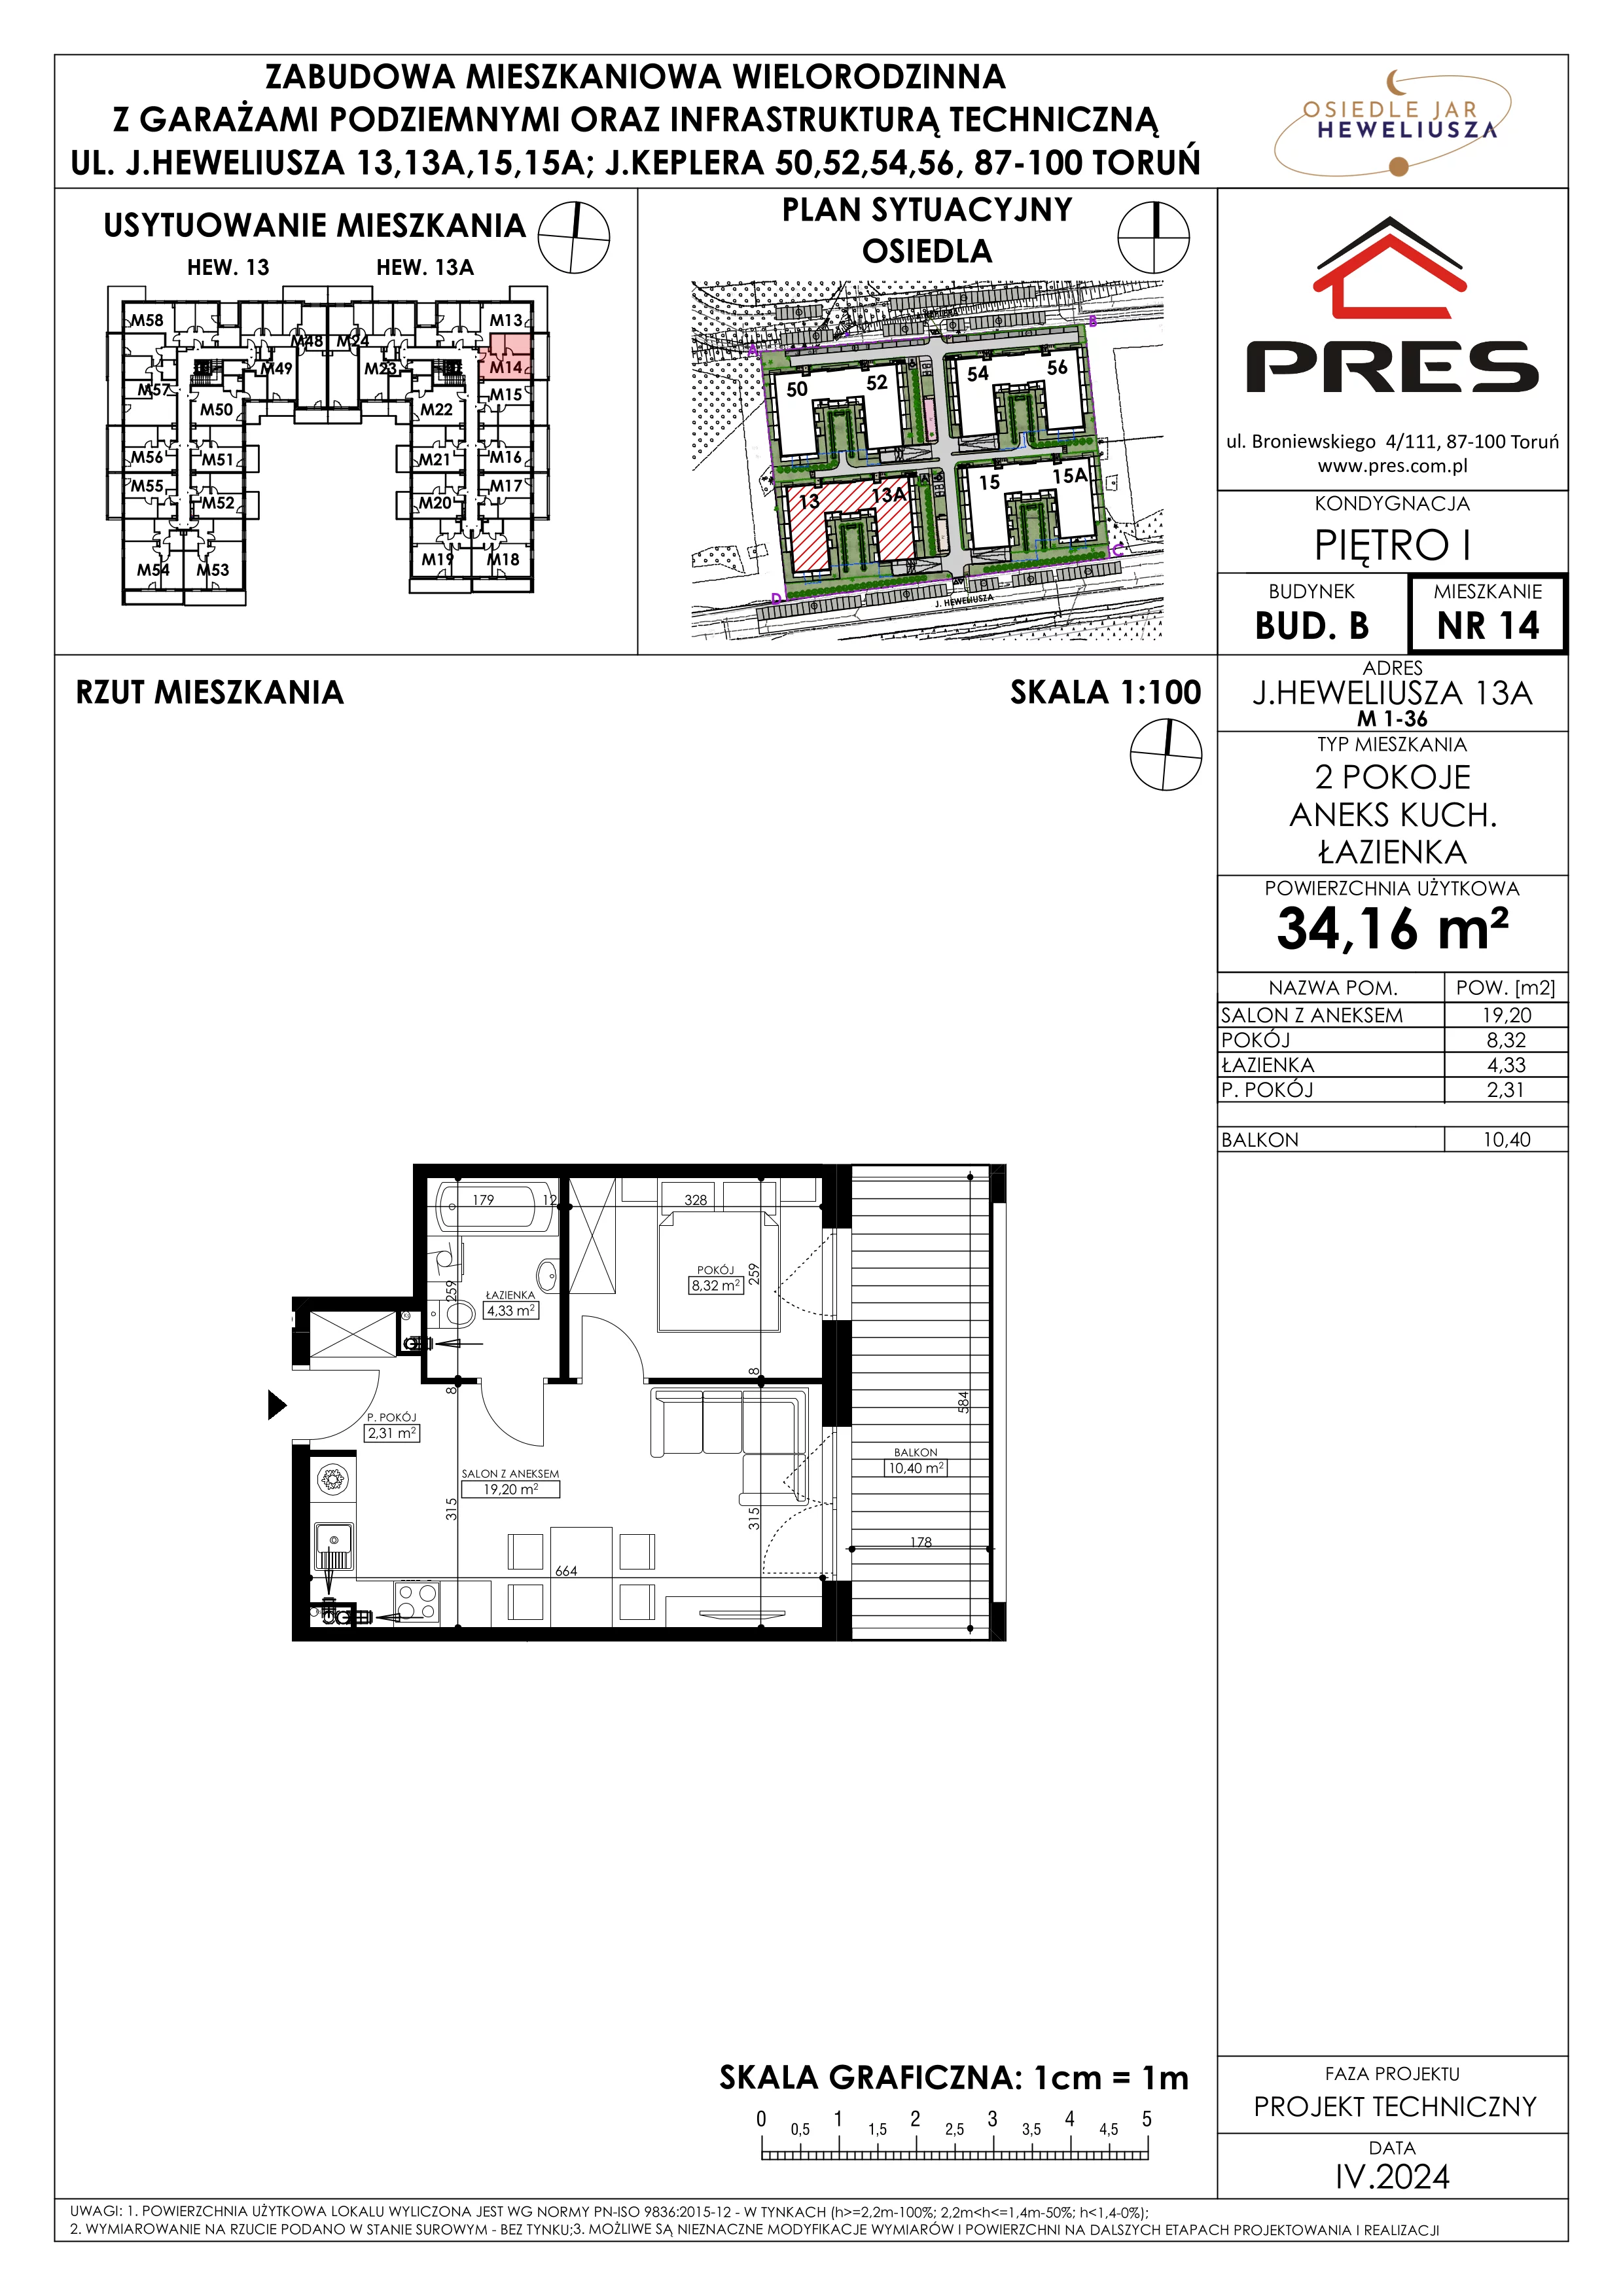 Mieszkanie 34,16 m², piętro 1, oferta nr 14, Osiedle JAR Heweliusza - Etap II, Toruń, Wrzosy, JAR, ul. Heweliusza 13-15A